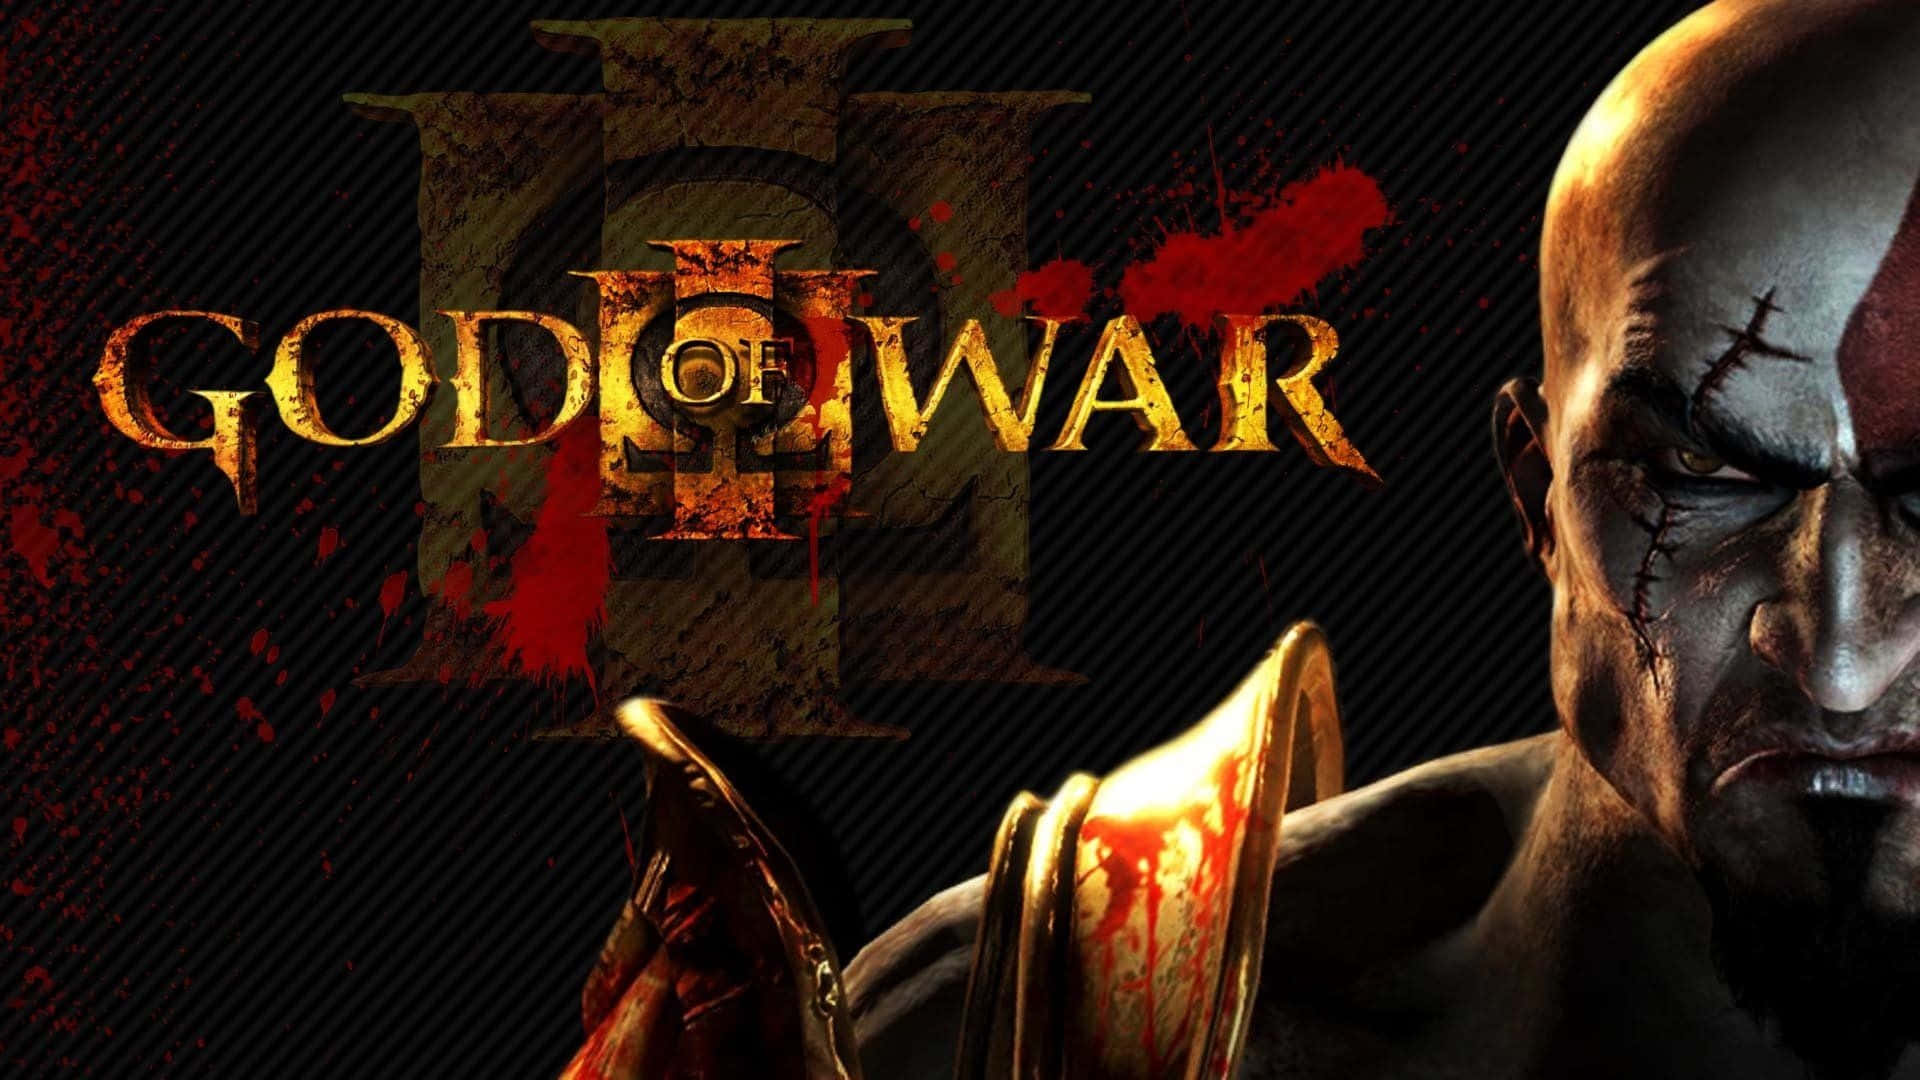 Kratos,bereit Für Die Schlacht In God Of War 3. Wallpaper